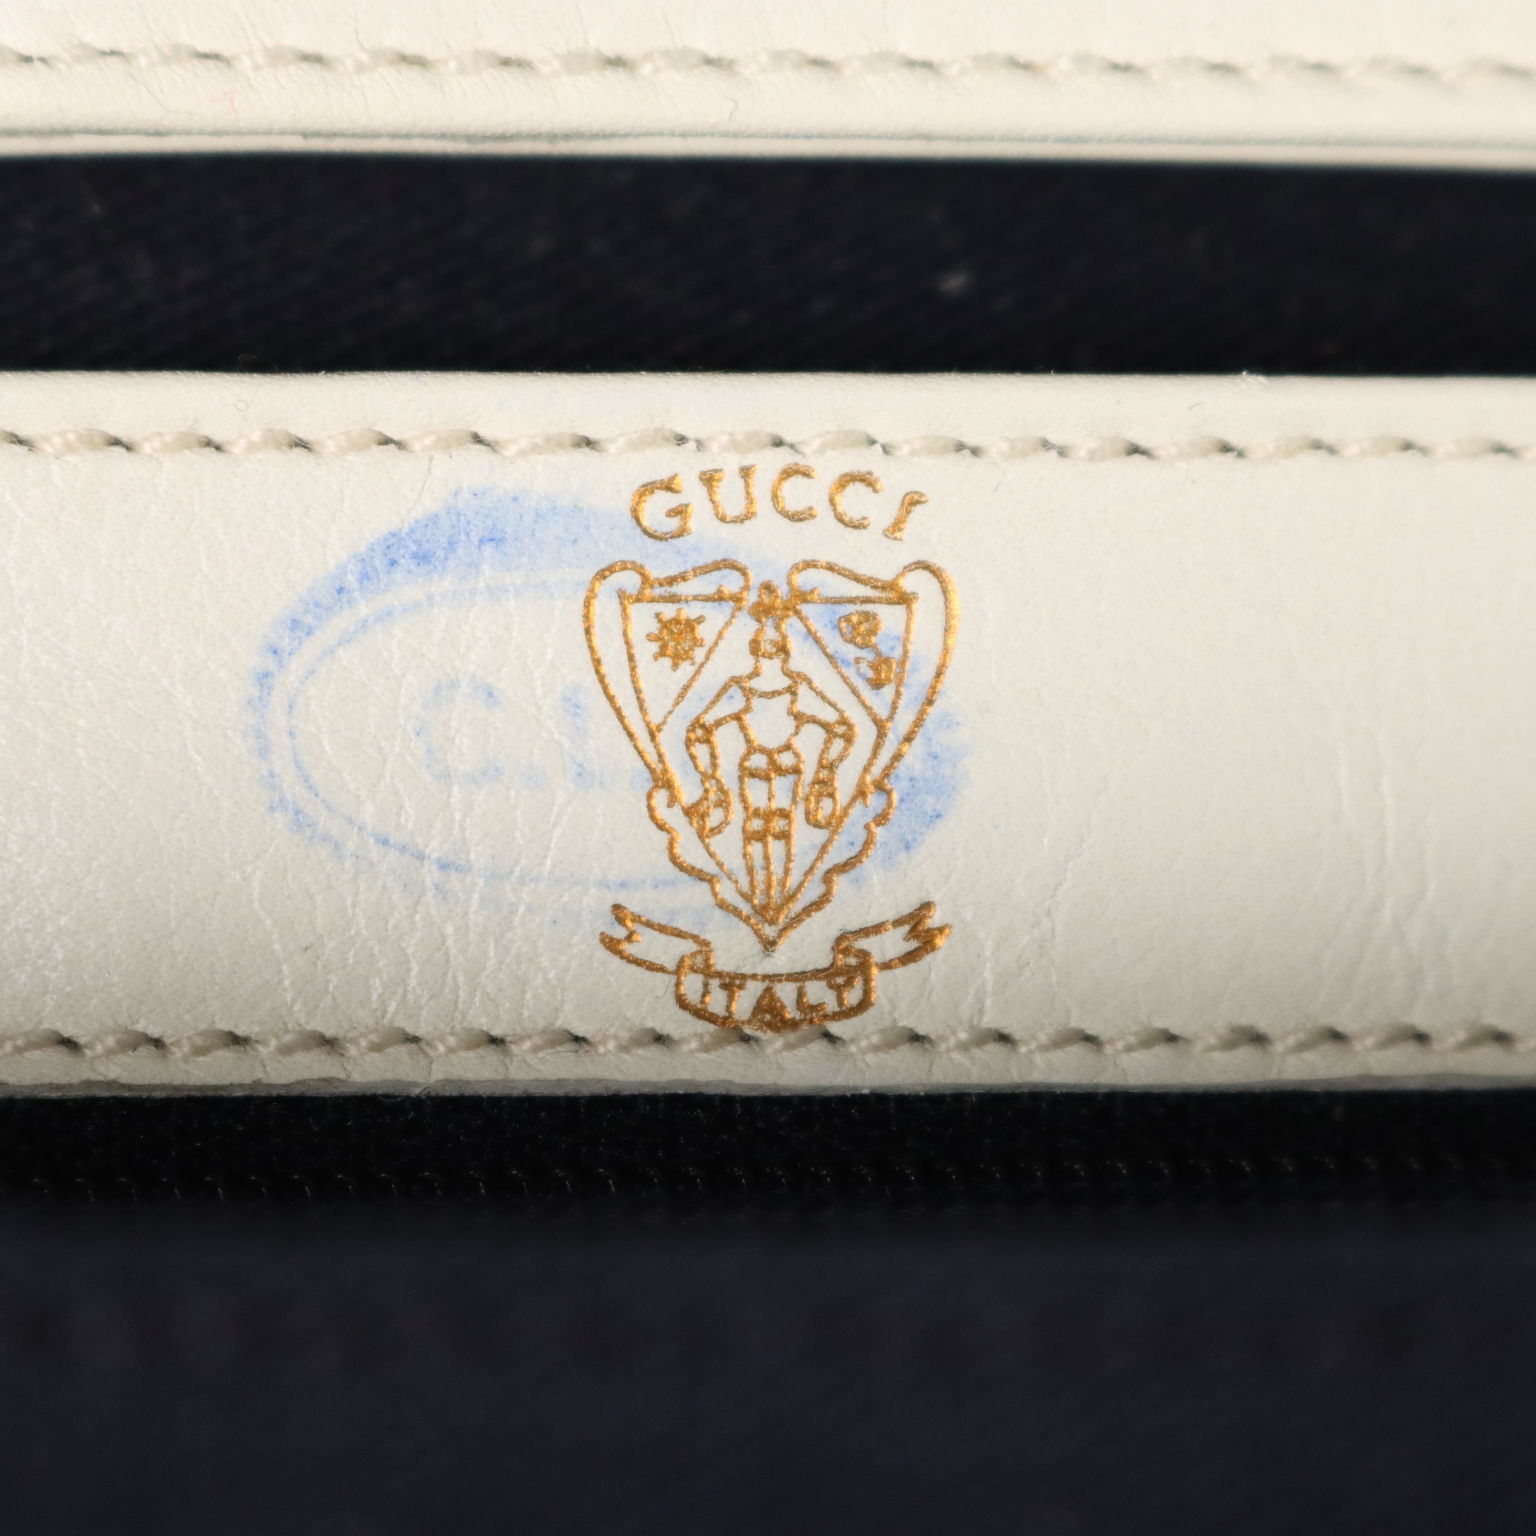 Gucci Borsa Vintage Blu e Rosso Firenze Anni 50 Pelle bianca Tracolla